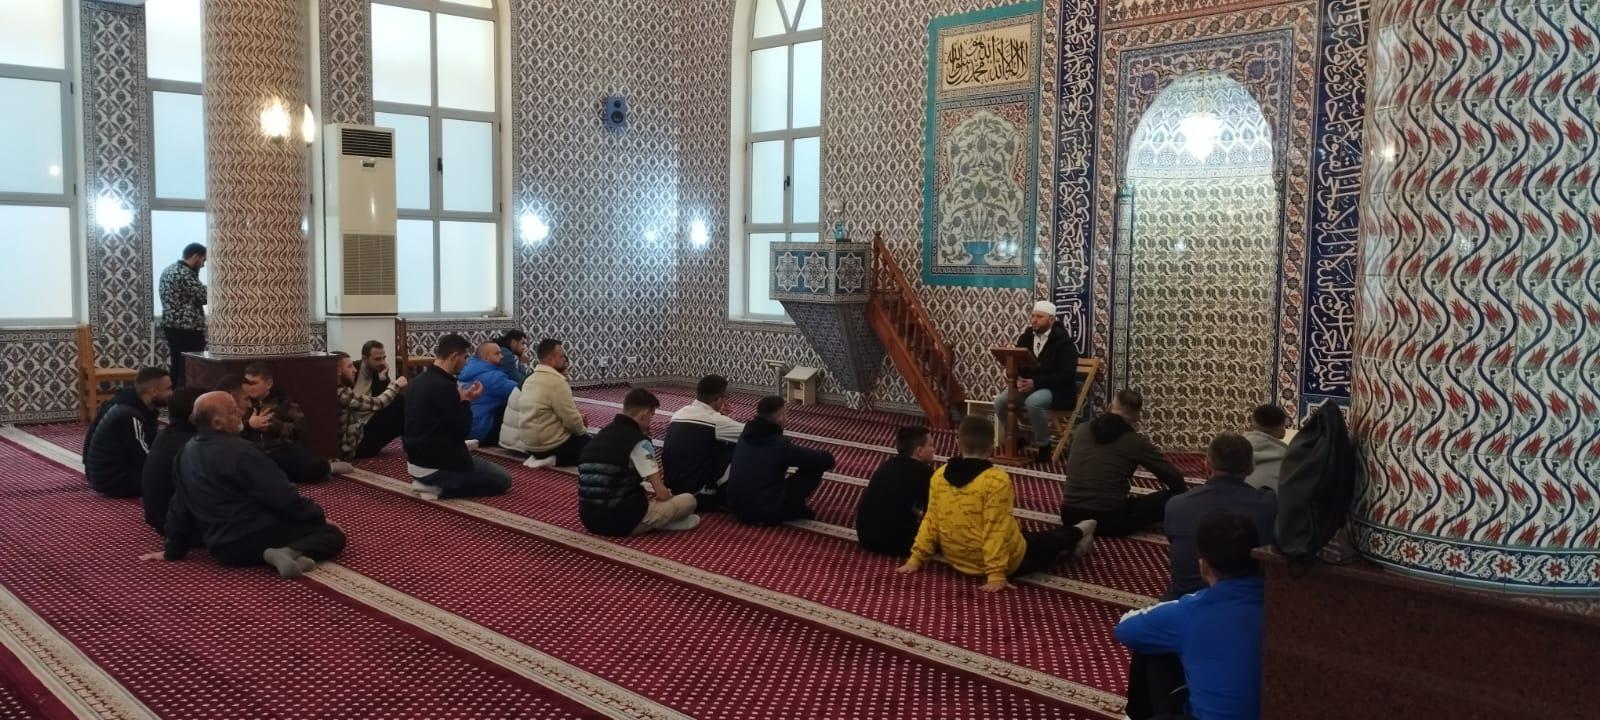 Vazhdon tradita e bukur e iftareve të vëllazërisë islame